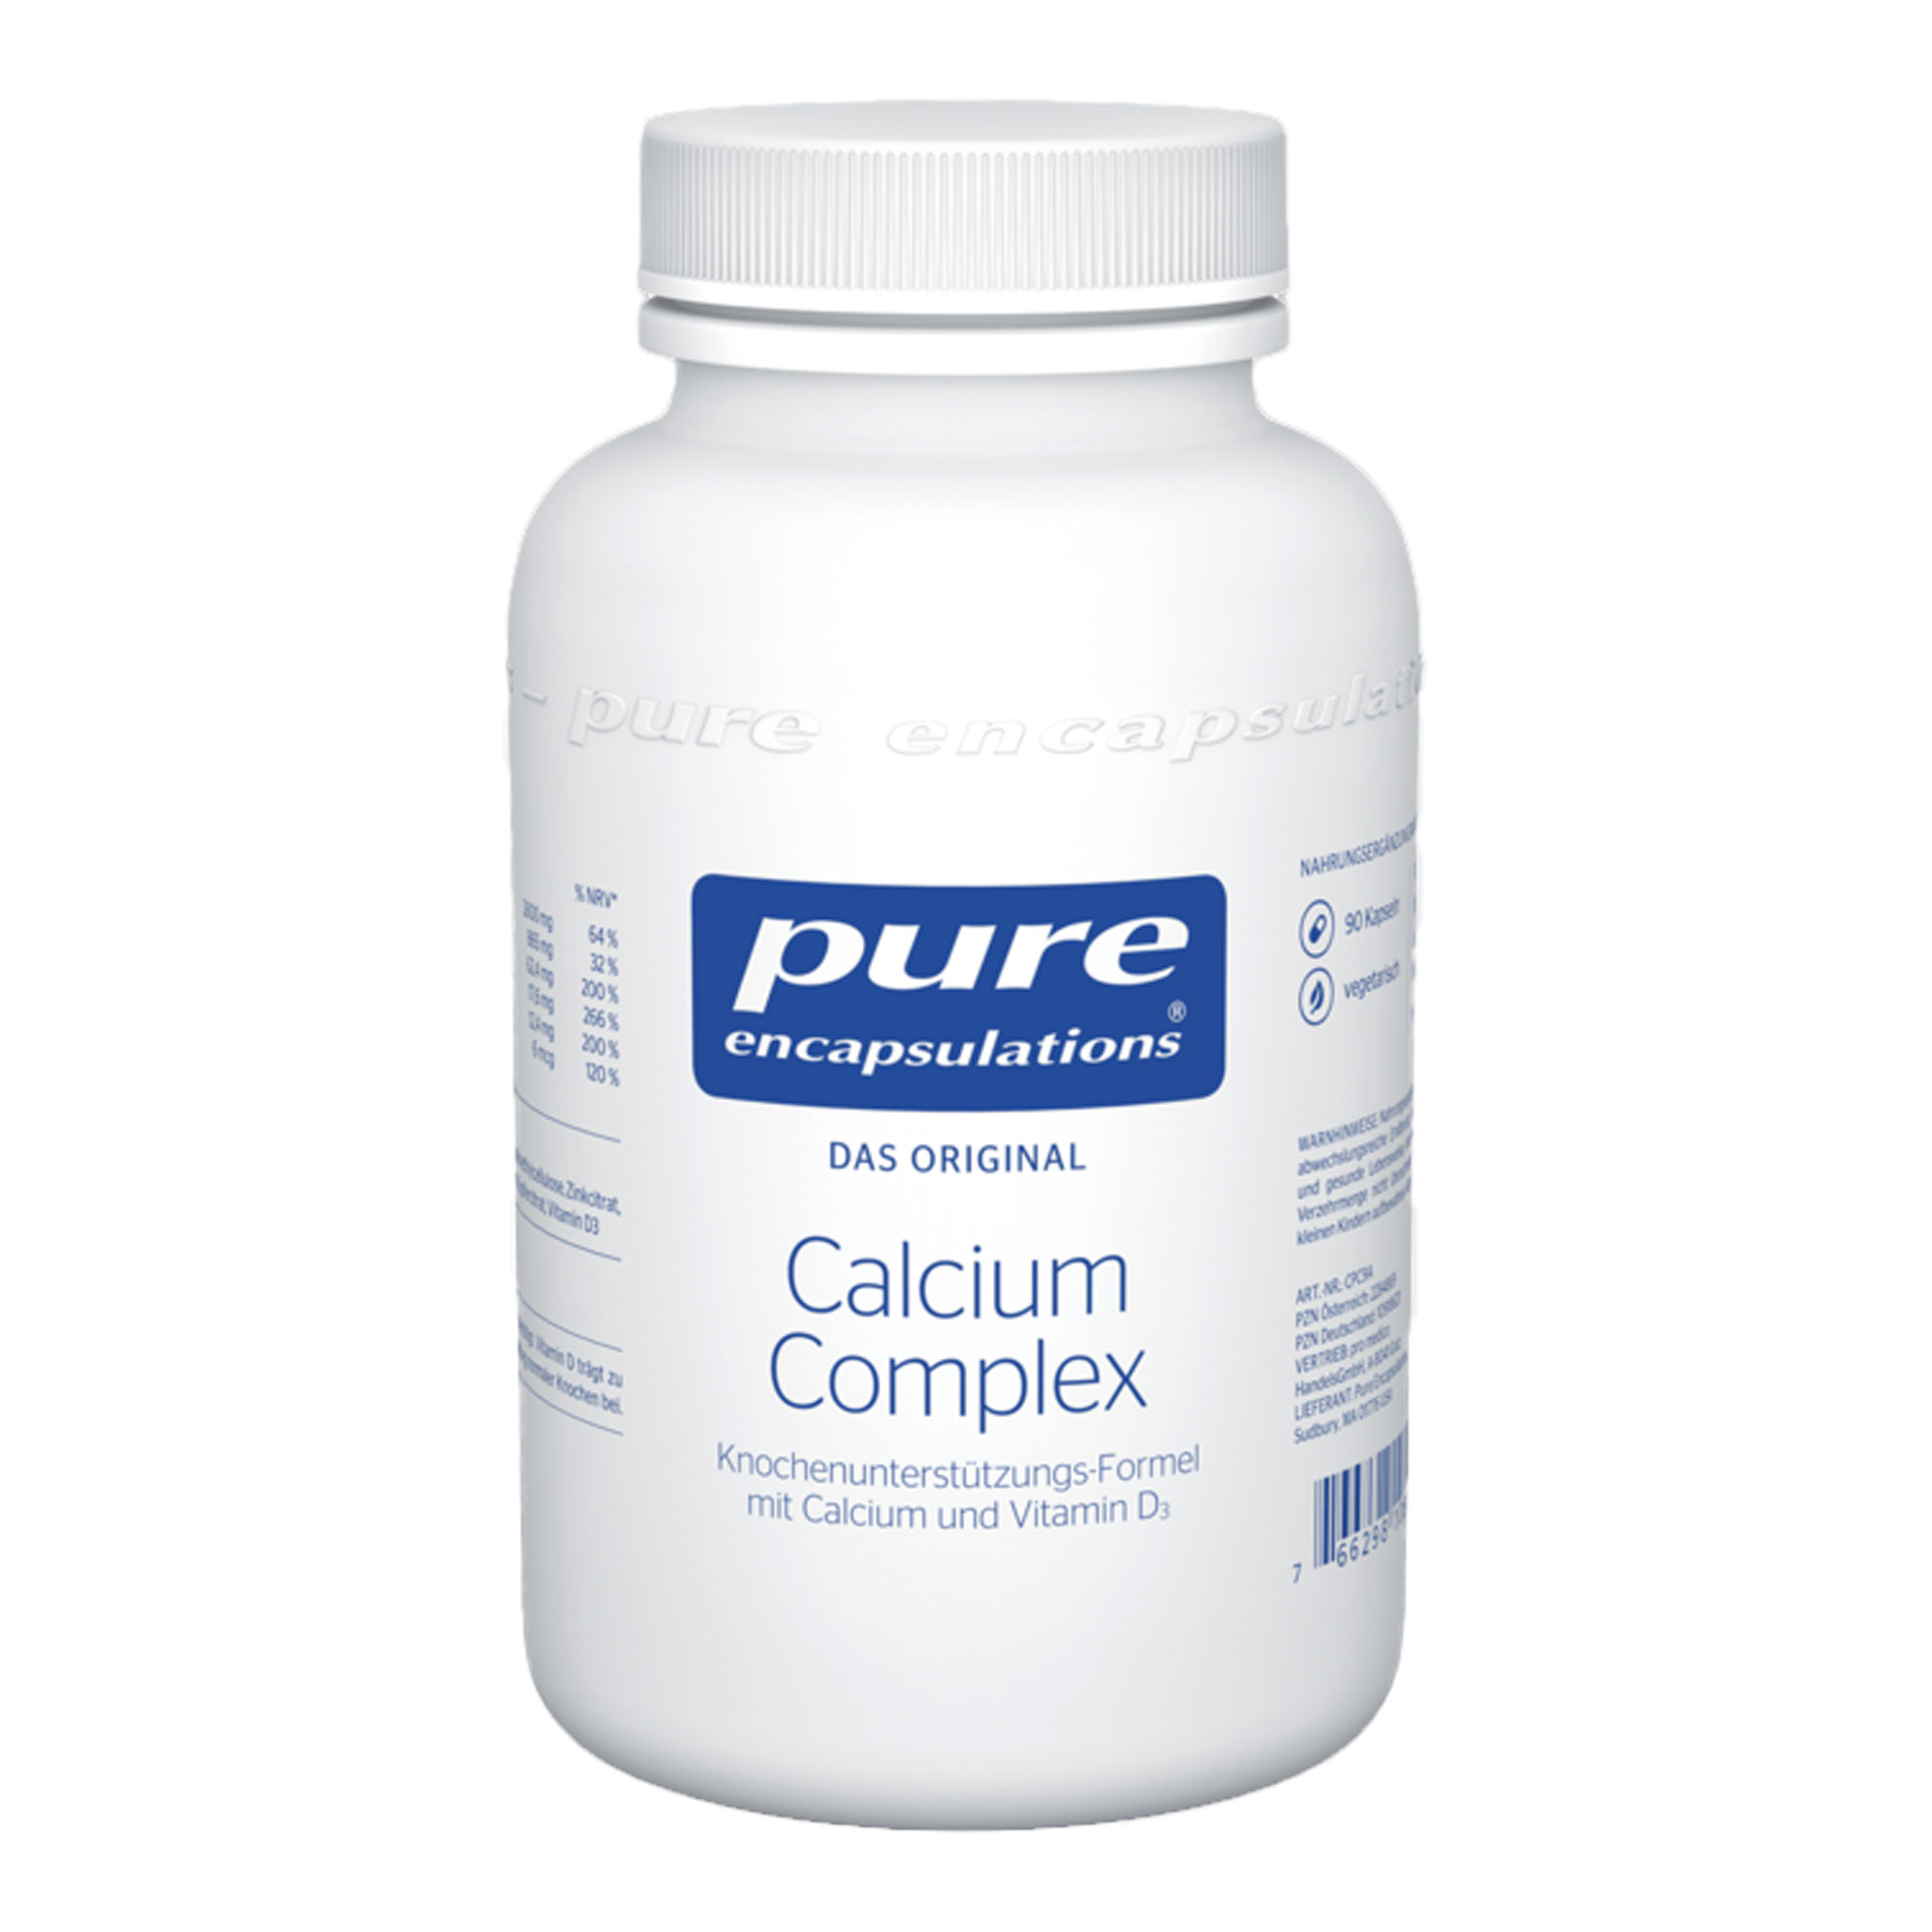 Nahrungsergänzungsmittel mit Calcium und Vitamin D3. Zur Unterstützung der normalen Knochenbildung.